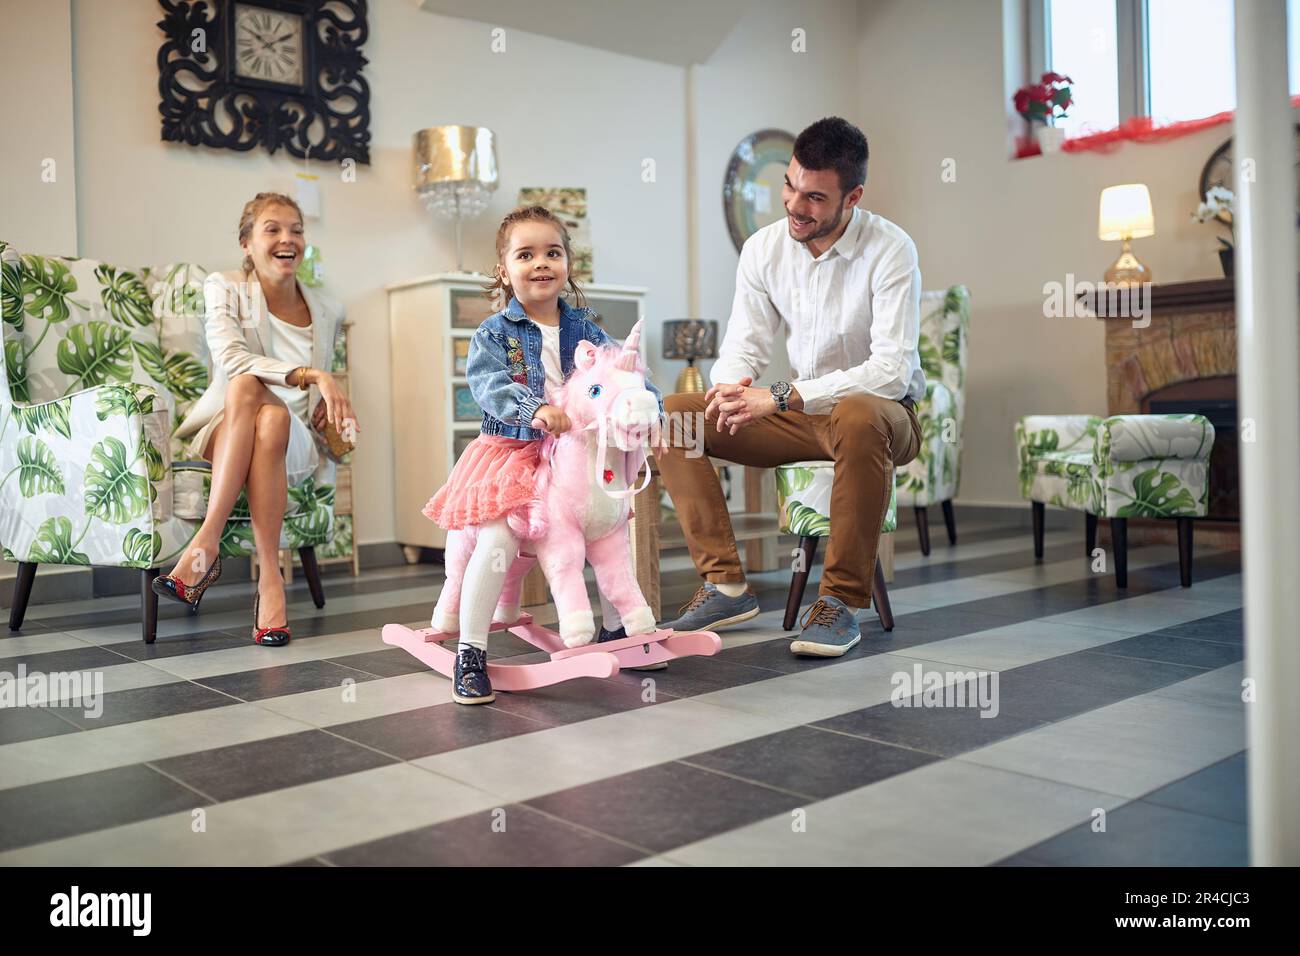 Belle famille de jeune couple et petite fille dans un magasin de meubles moderne, fille sur un cheval de bascule licorne. Shopping, concept de style de vie. Banque D'Images